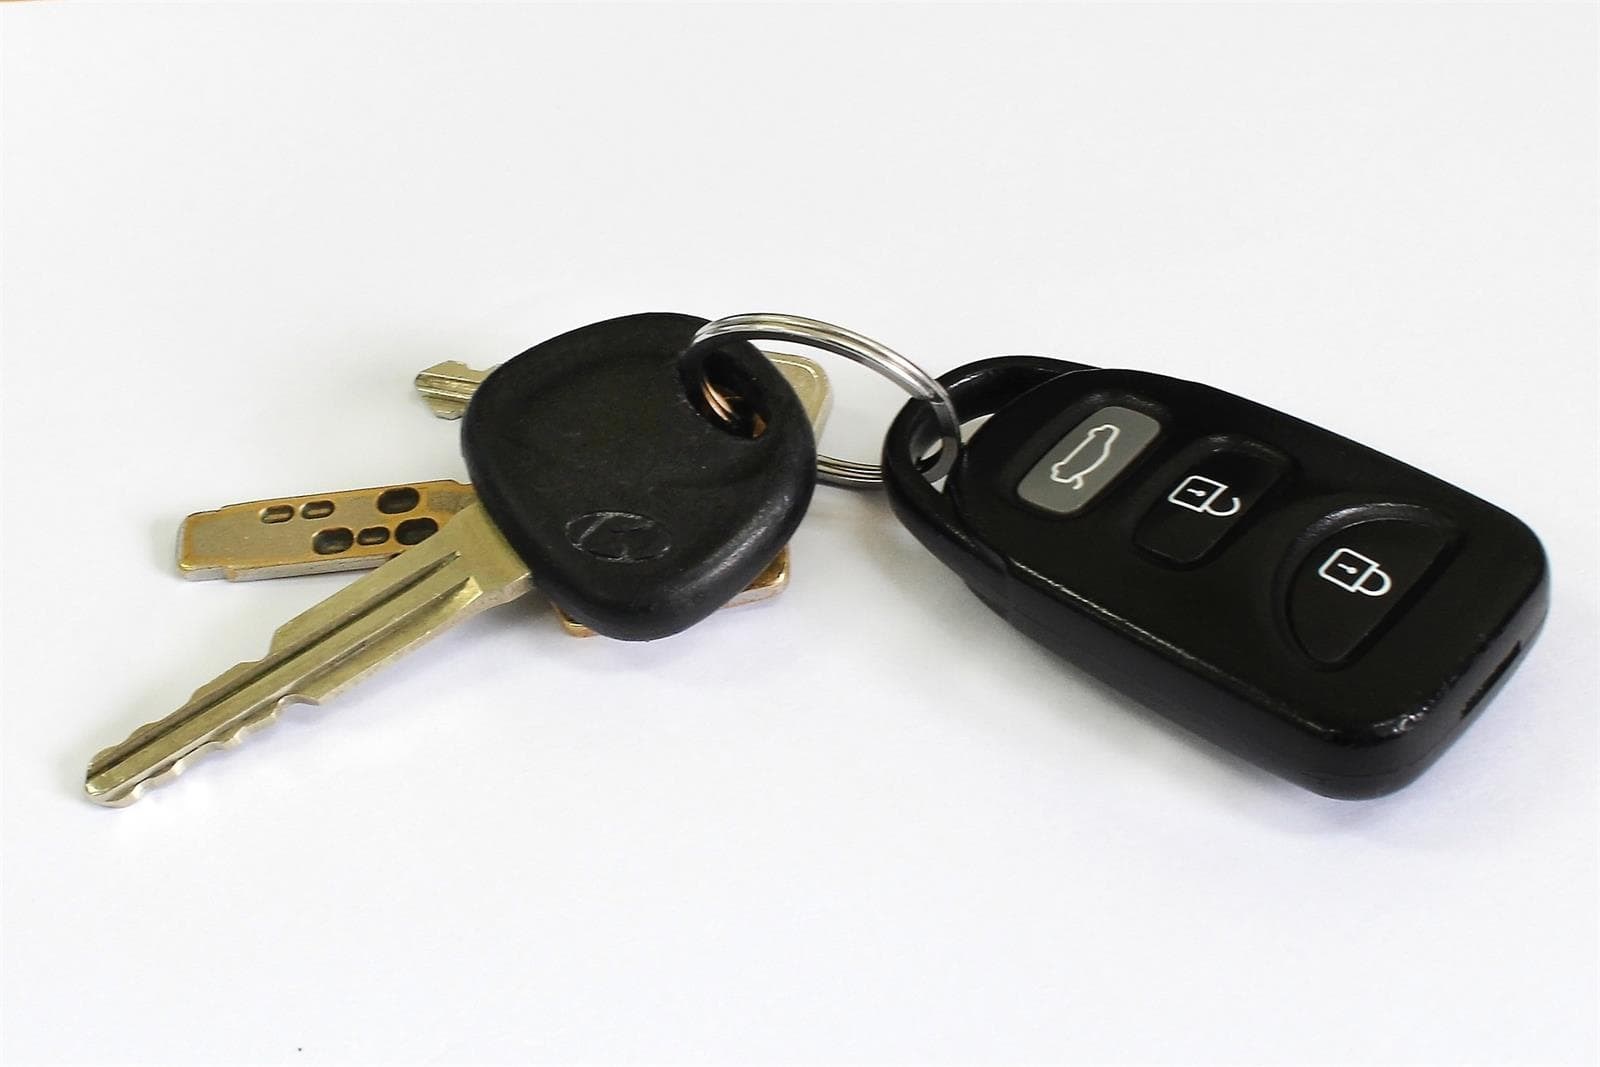 ¿Se pueden hacer duplicados de todas las llaves de coche? - Imagen 1